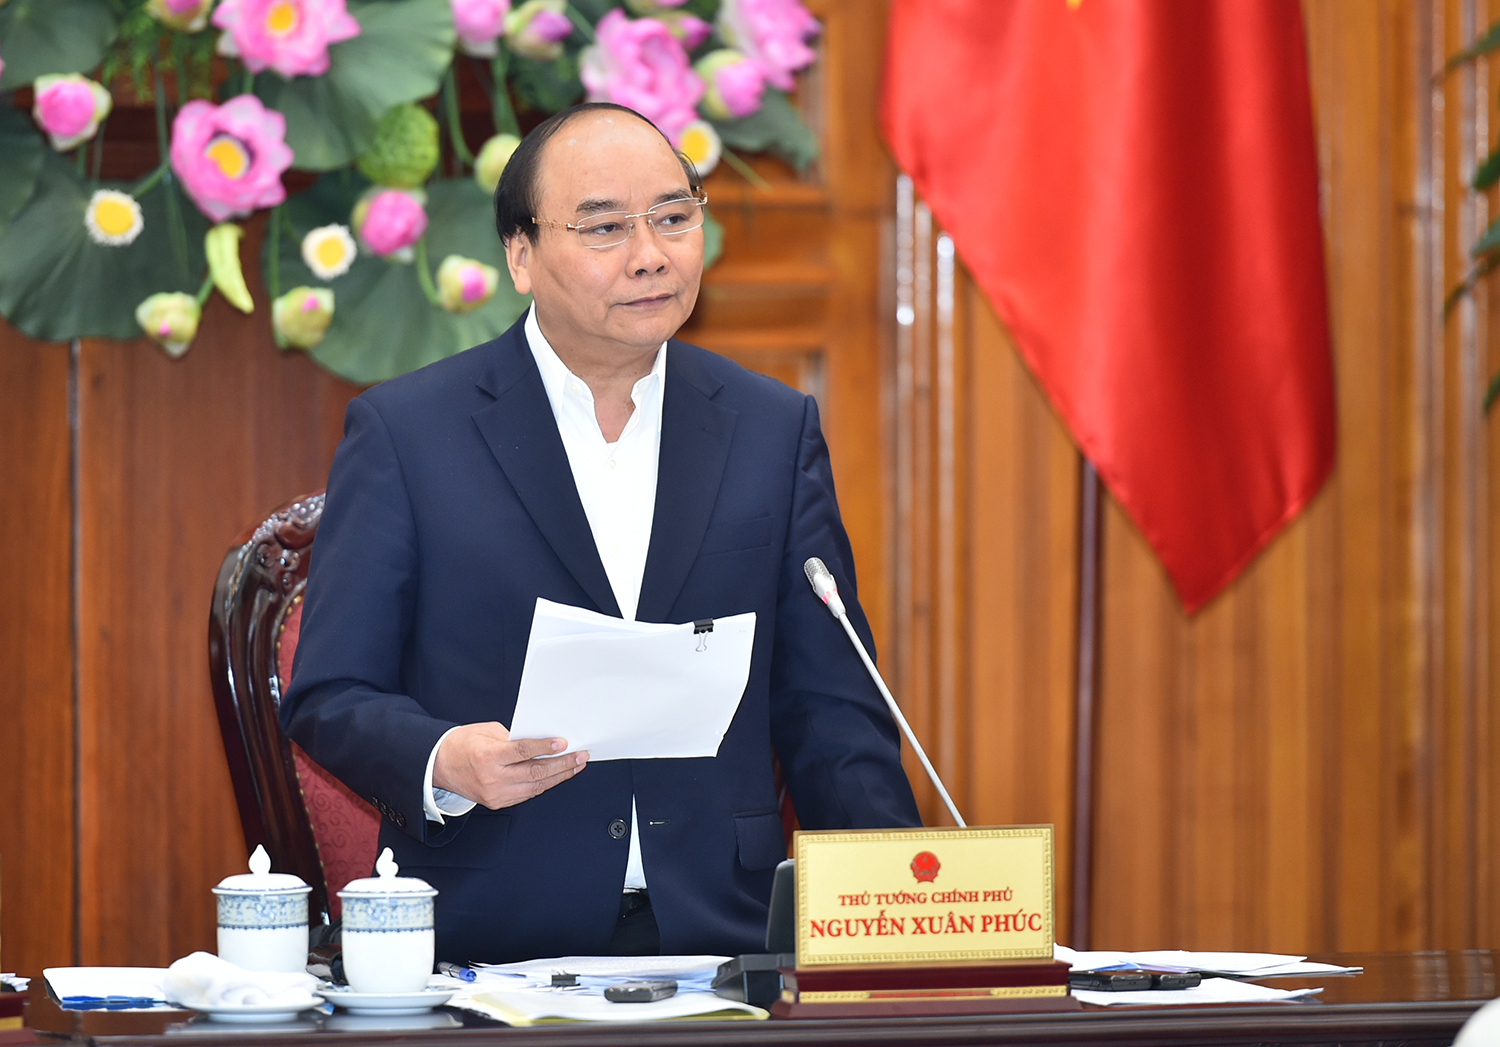  Thủ tướng Nguyễn Xuân Phúc hoan nghênh tinh thần chống tiêu cực, tham nhũng, tiết kiệm trong phát triển GTVT. Ảnh: VGP